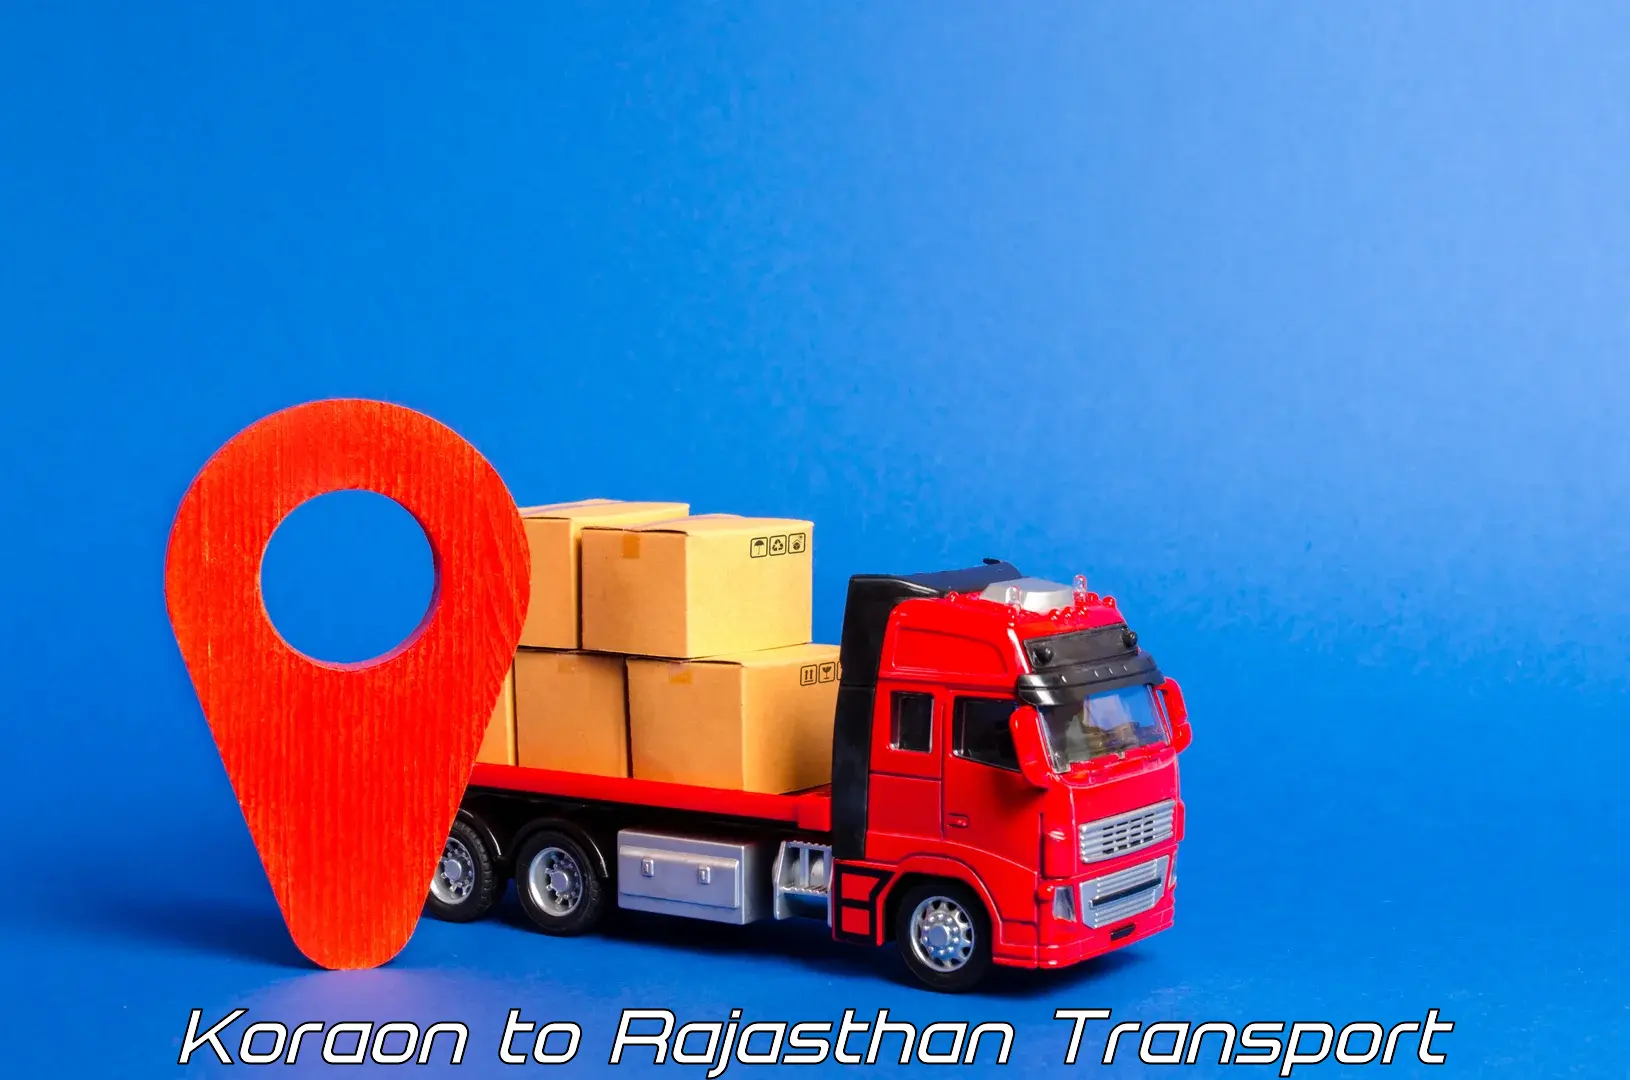 Bike transport service Koraon to Rajasthan